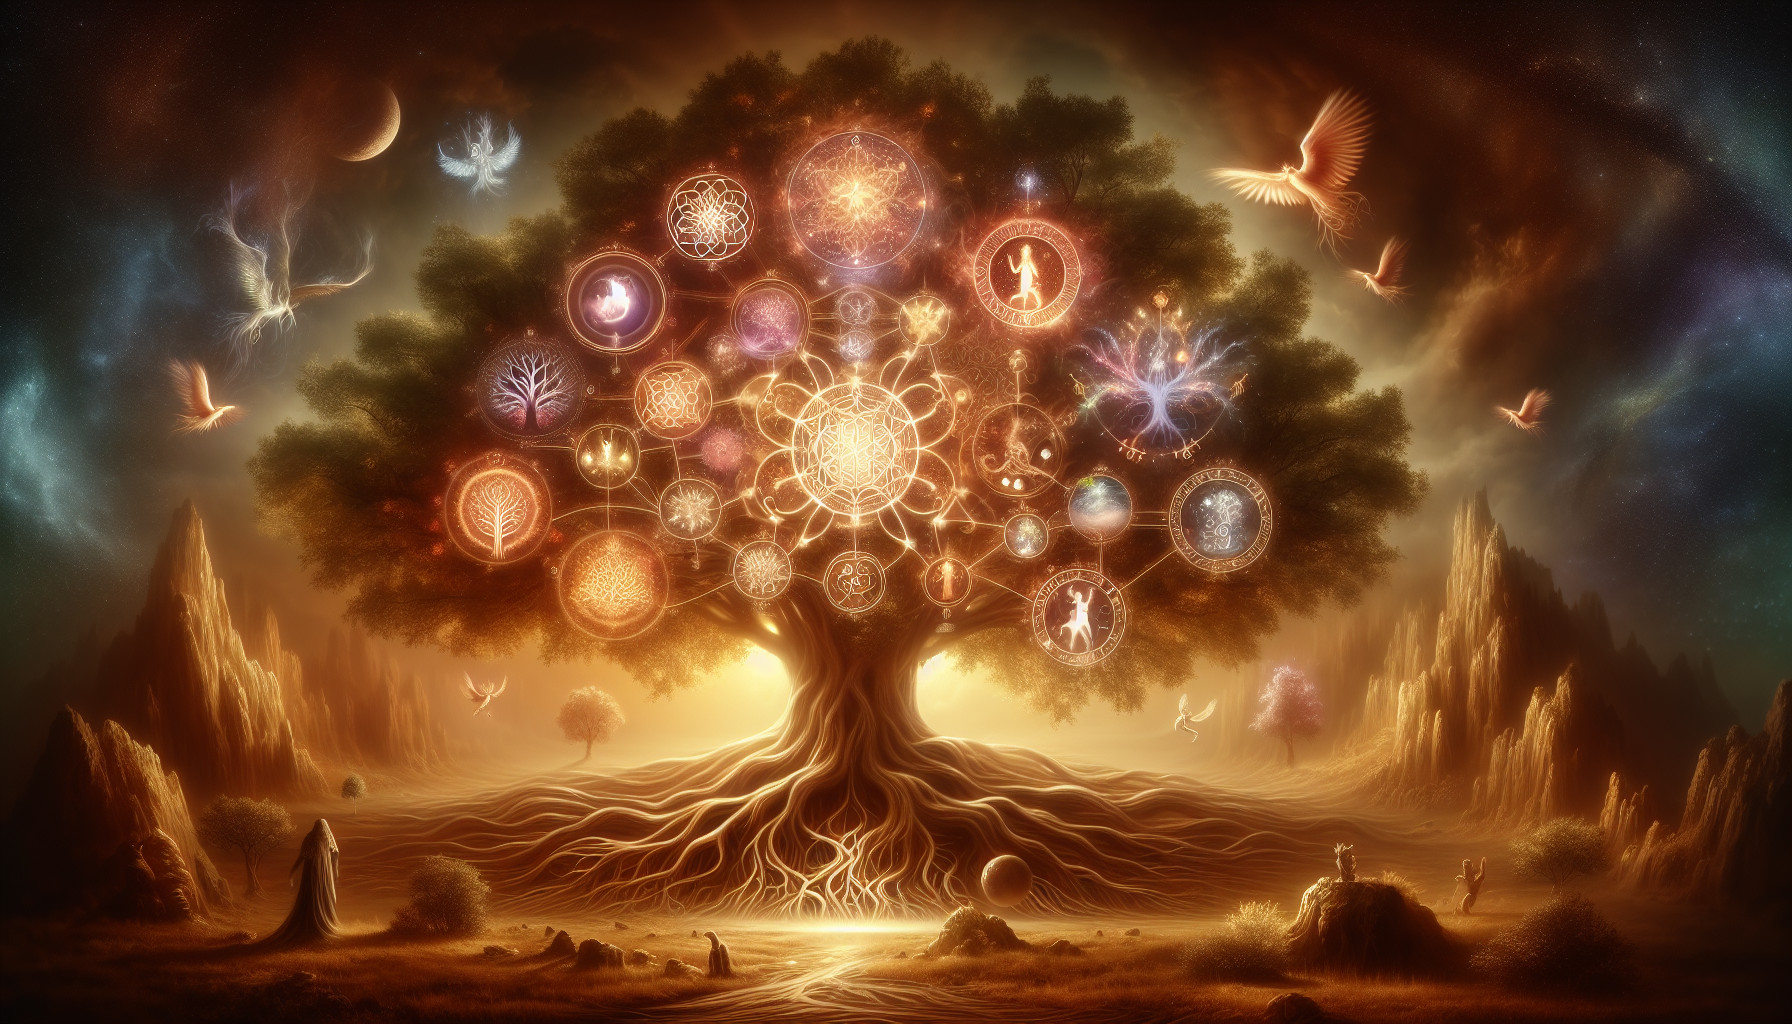 El árbol De La Vida: Interpretación Mística Y Esotérica